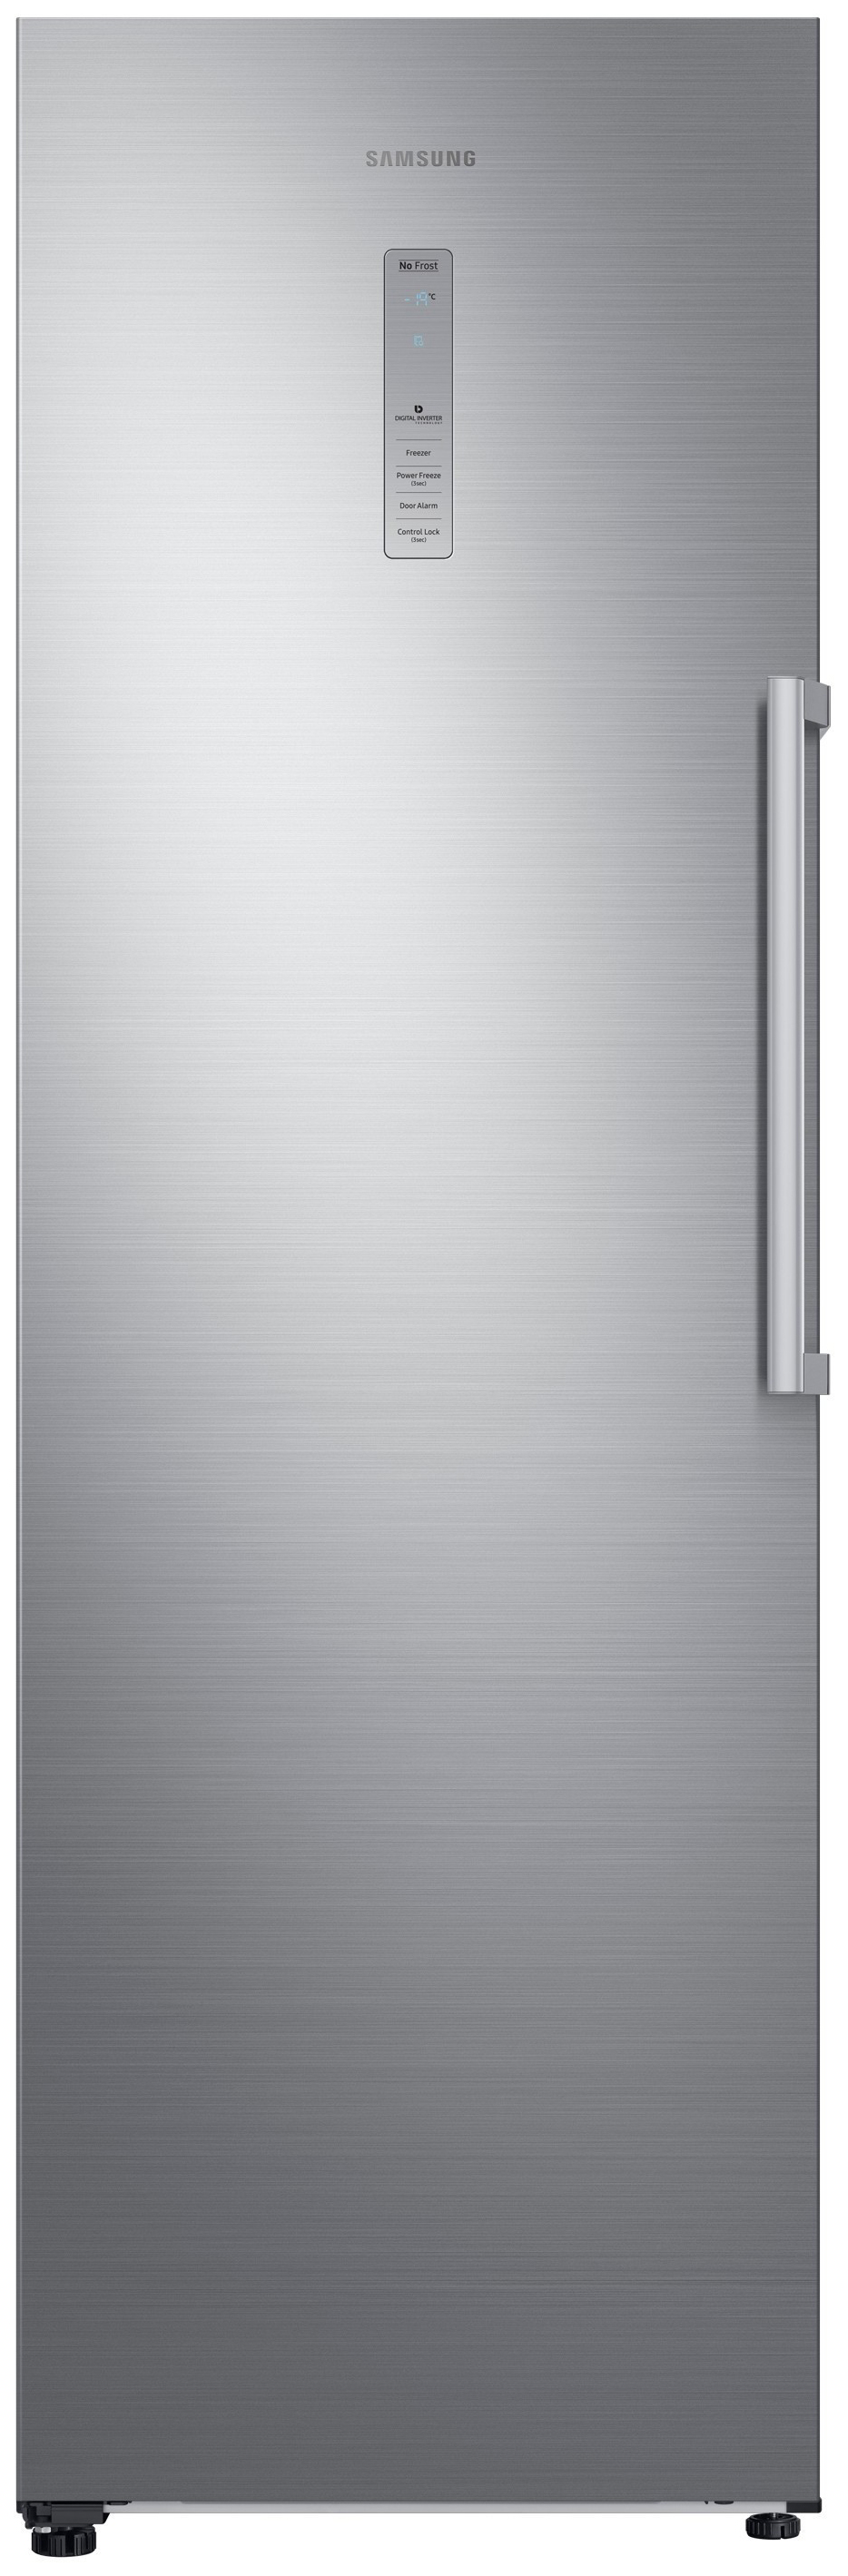 Холодильник Samsung RR 39 M 7140SAWT серебристый интерактивные панели samsung qb24r tb